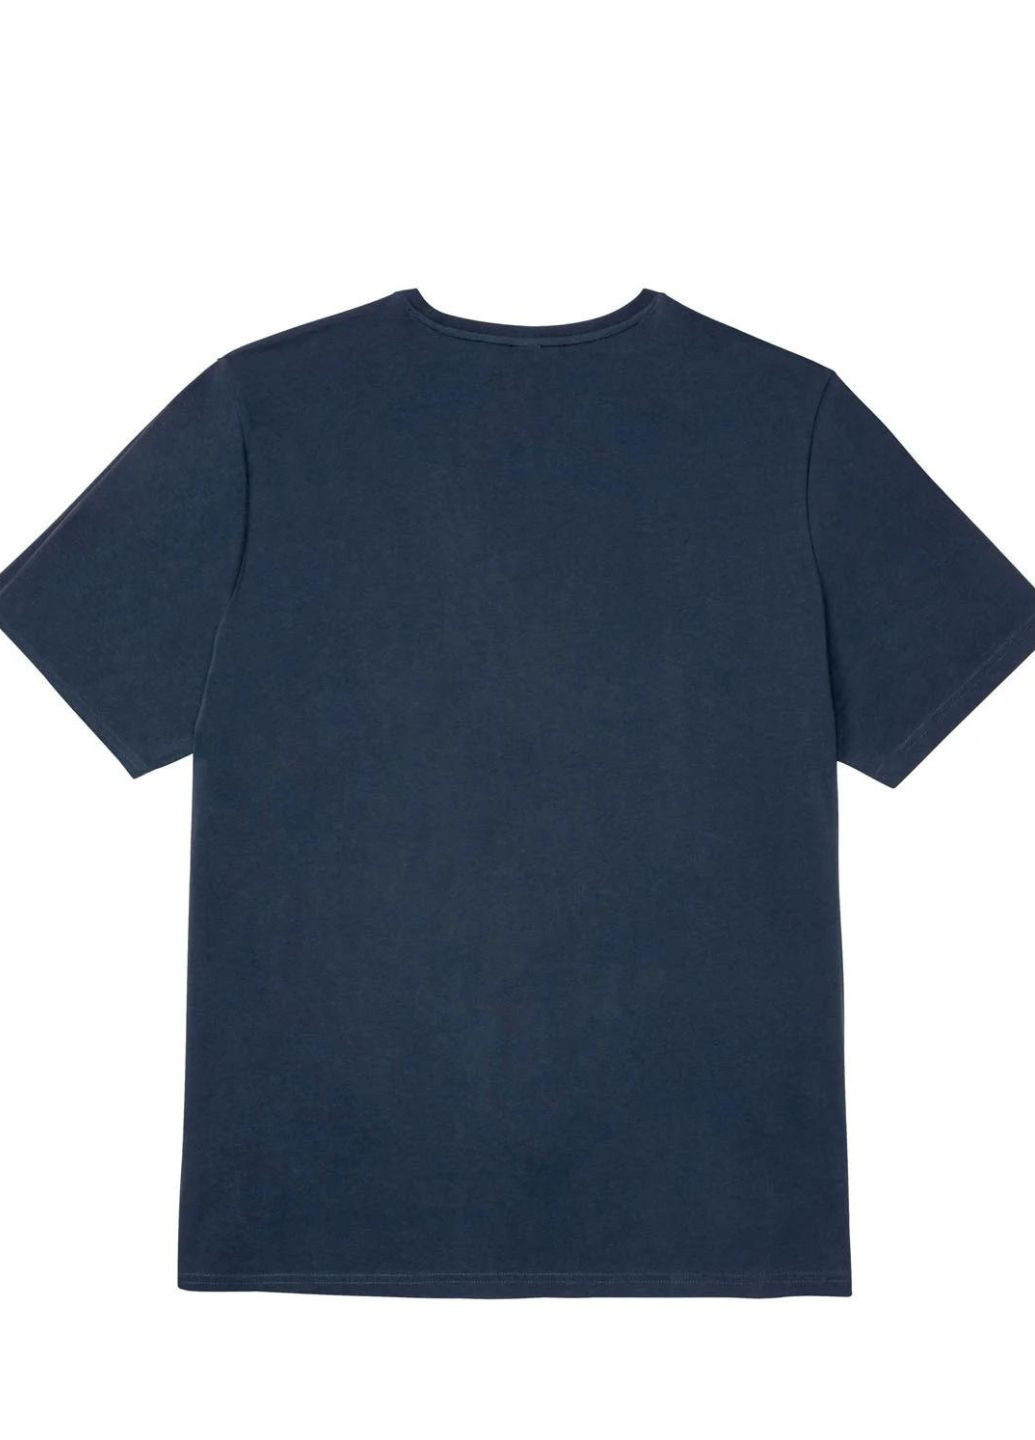 Пижама представительным джентельменам Livergy футболка + шорты надпись комбинированная домашняя хлопок органический